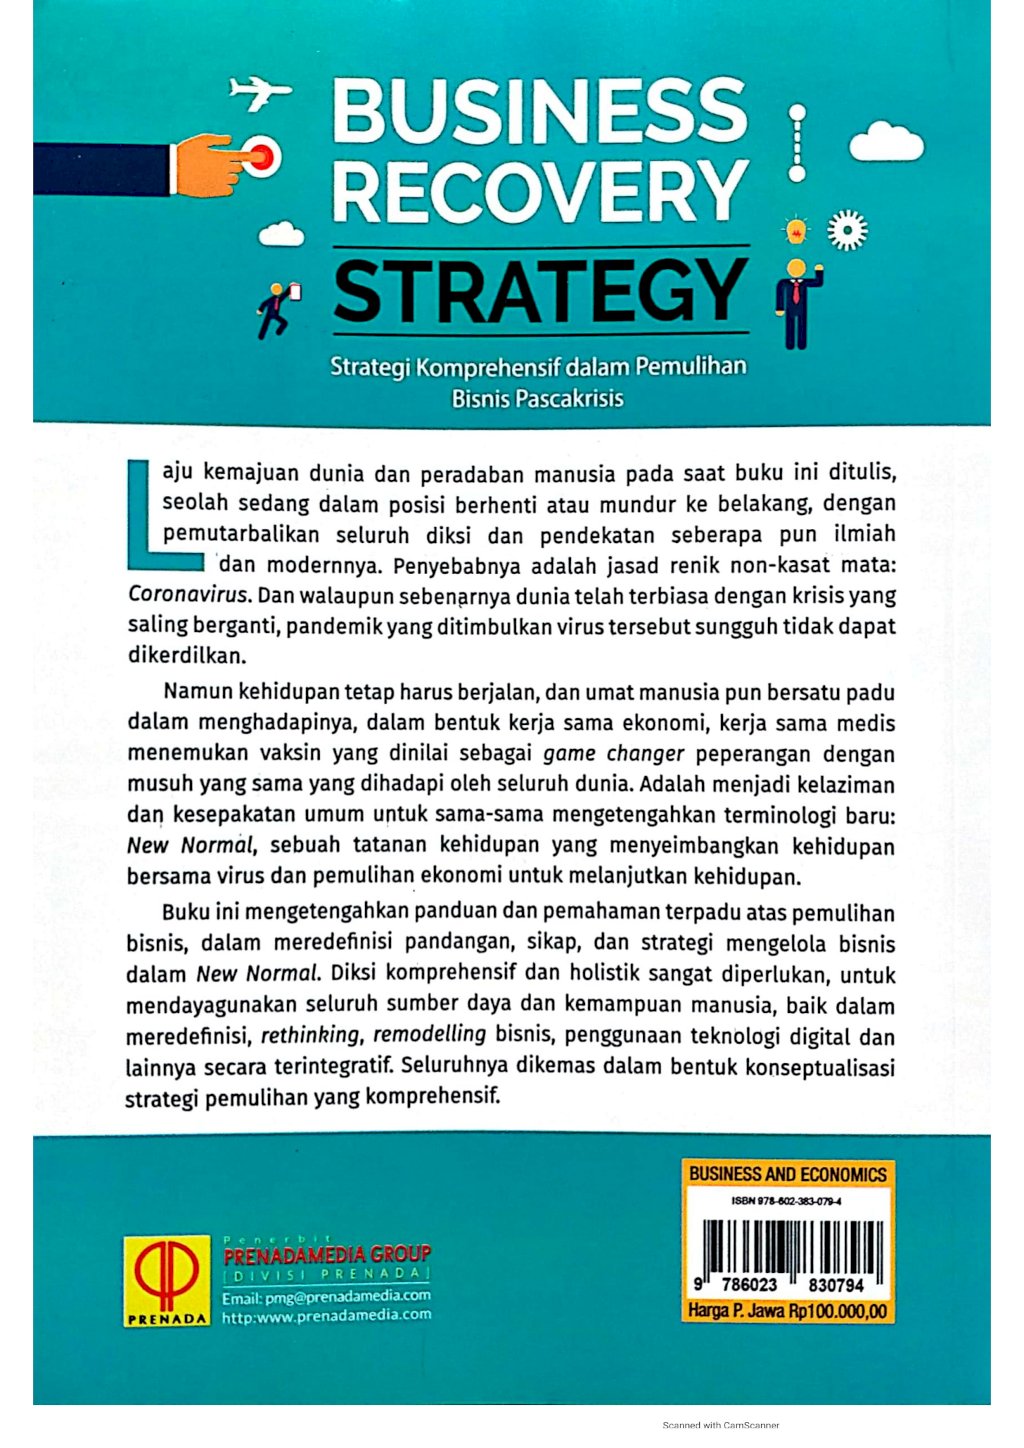 Business Recovery Strategy: Strategi Komprehensif dalam Pemulihan Bisnis Pascakrisis